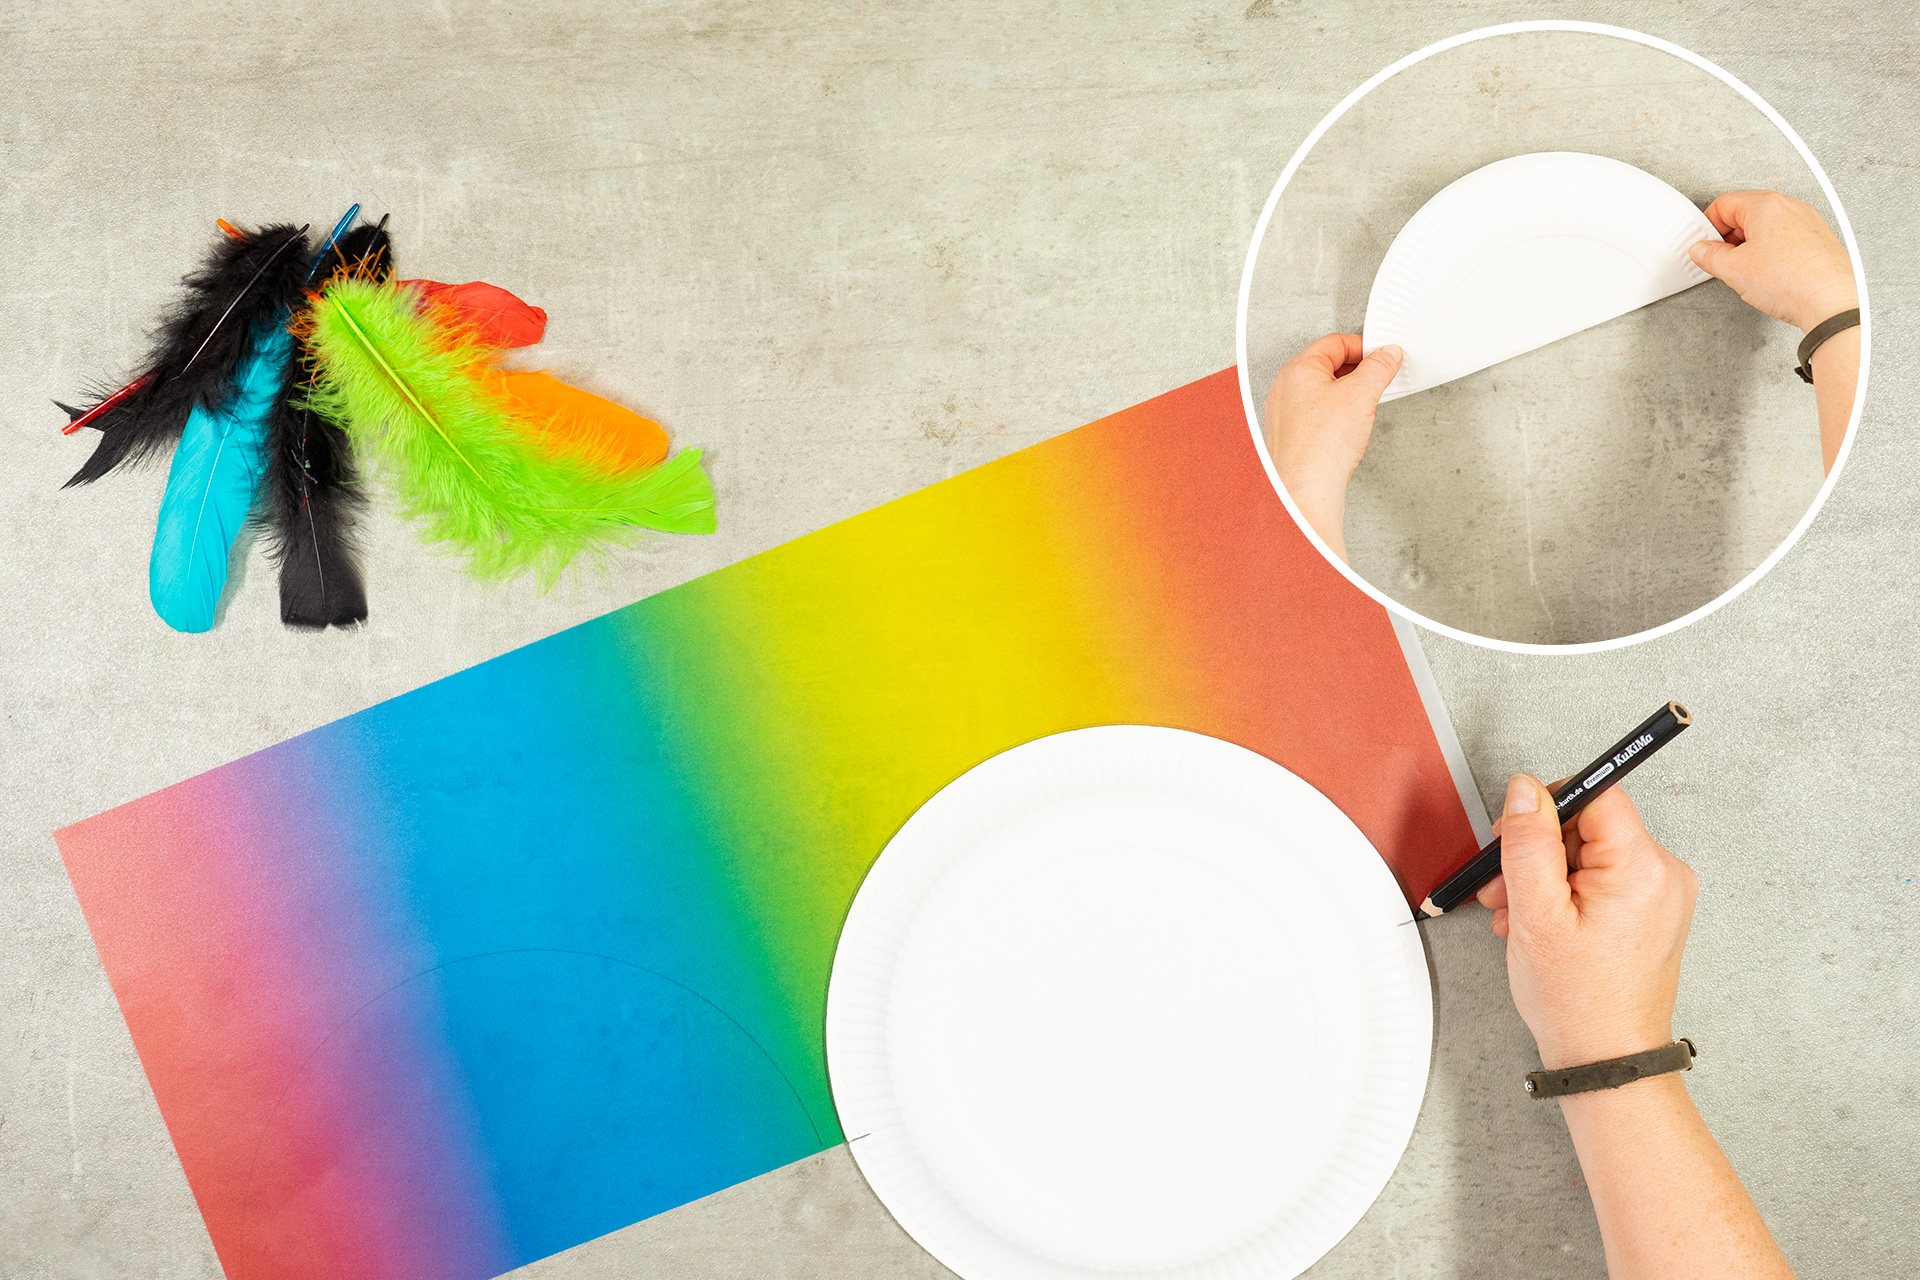 <p>Für verschiedene Farbschattierungen wähle ich einen Laternenzuschnitt 'Regenbogen' aus festem Transparentpapier. Ich nehme